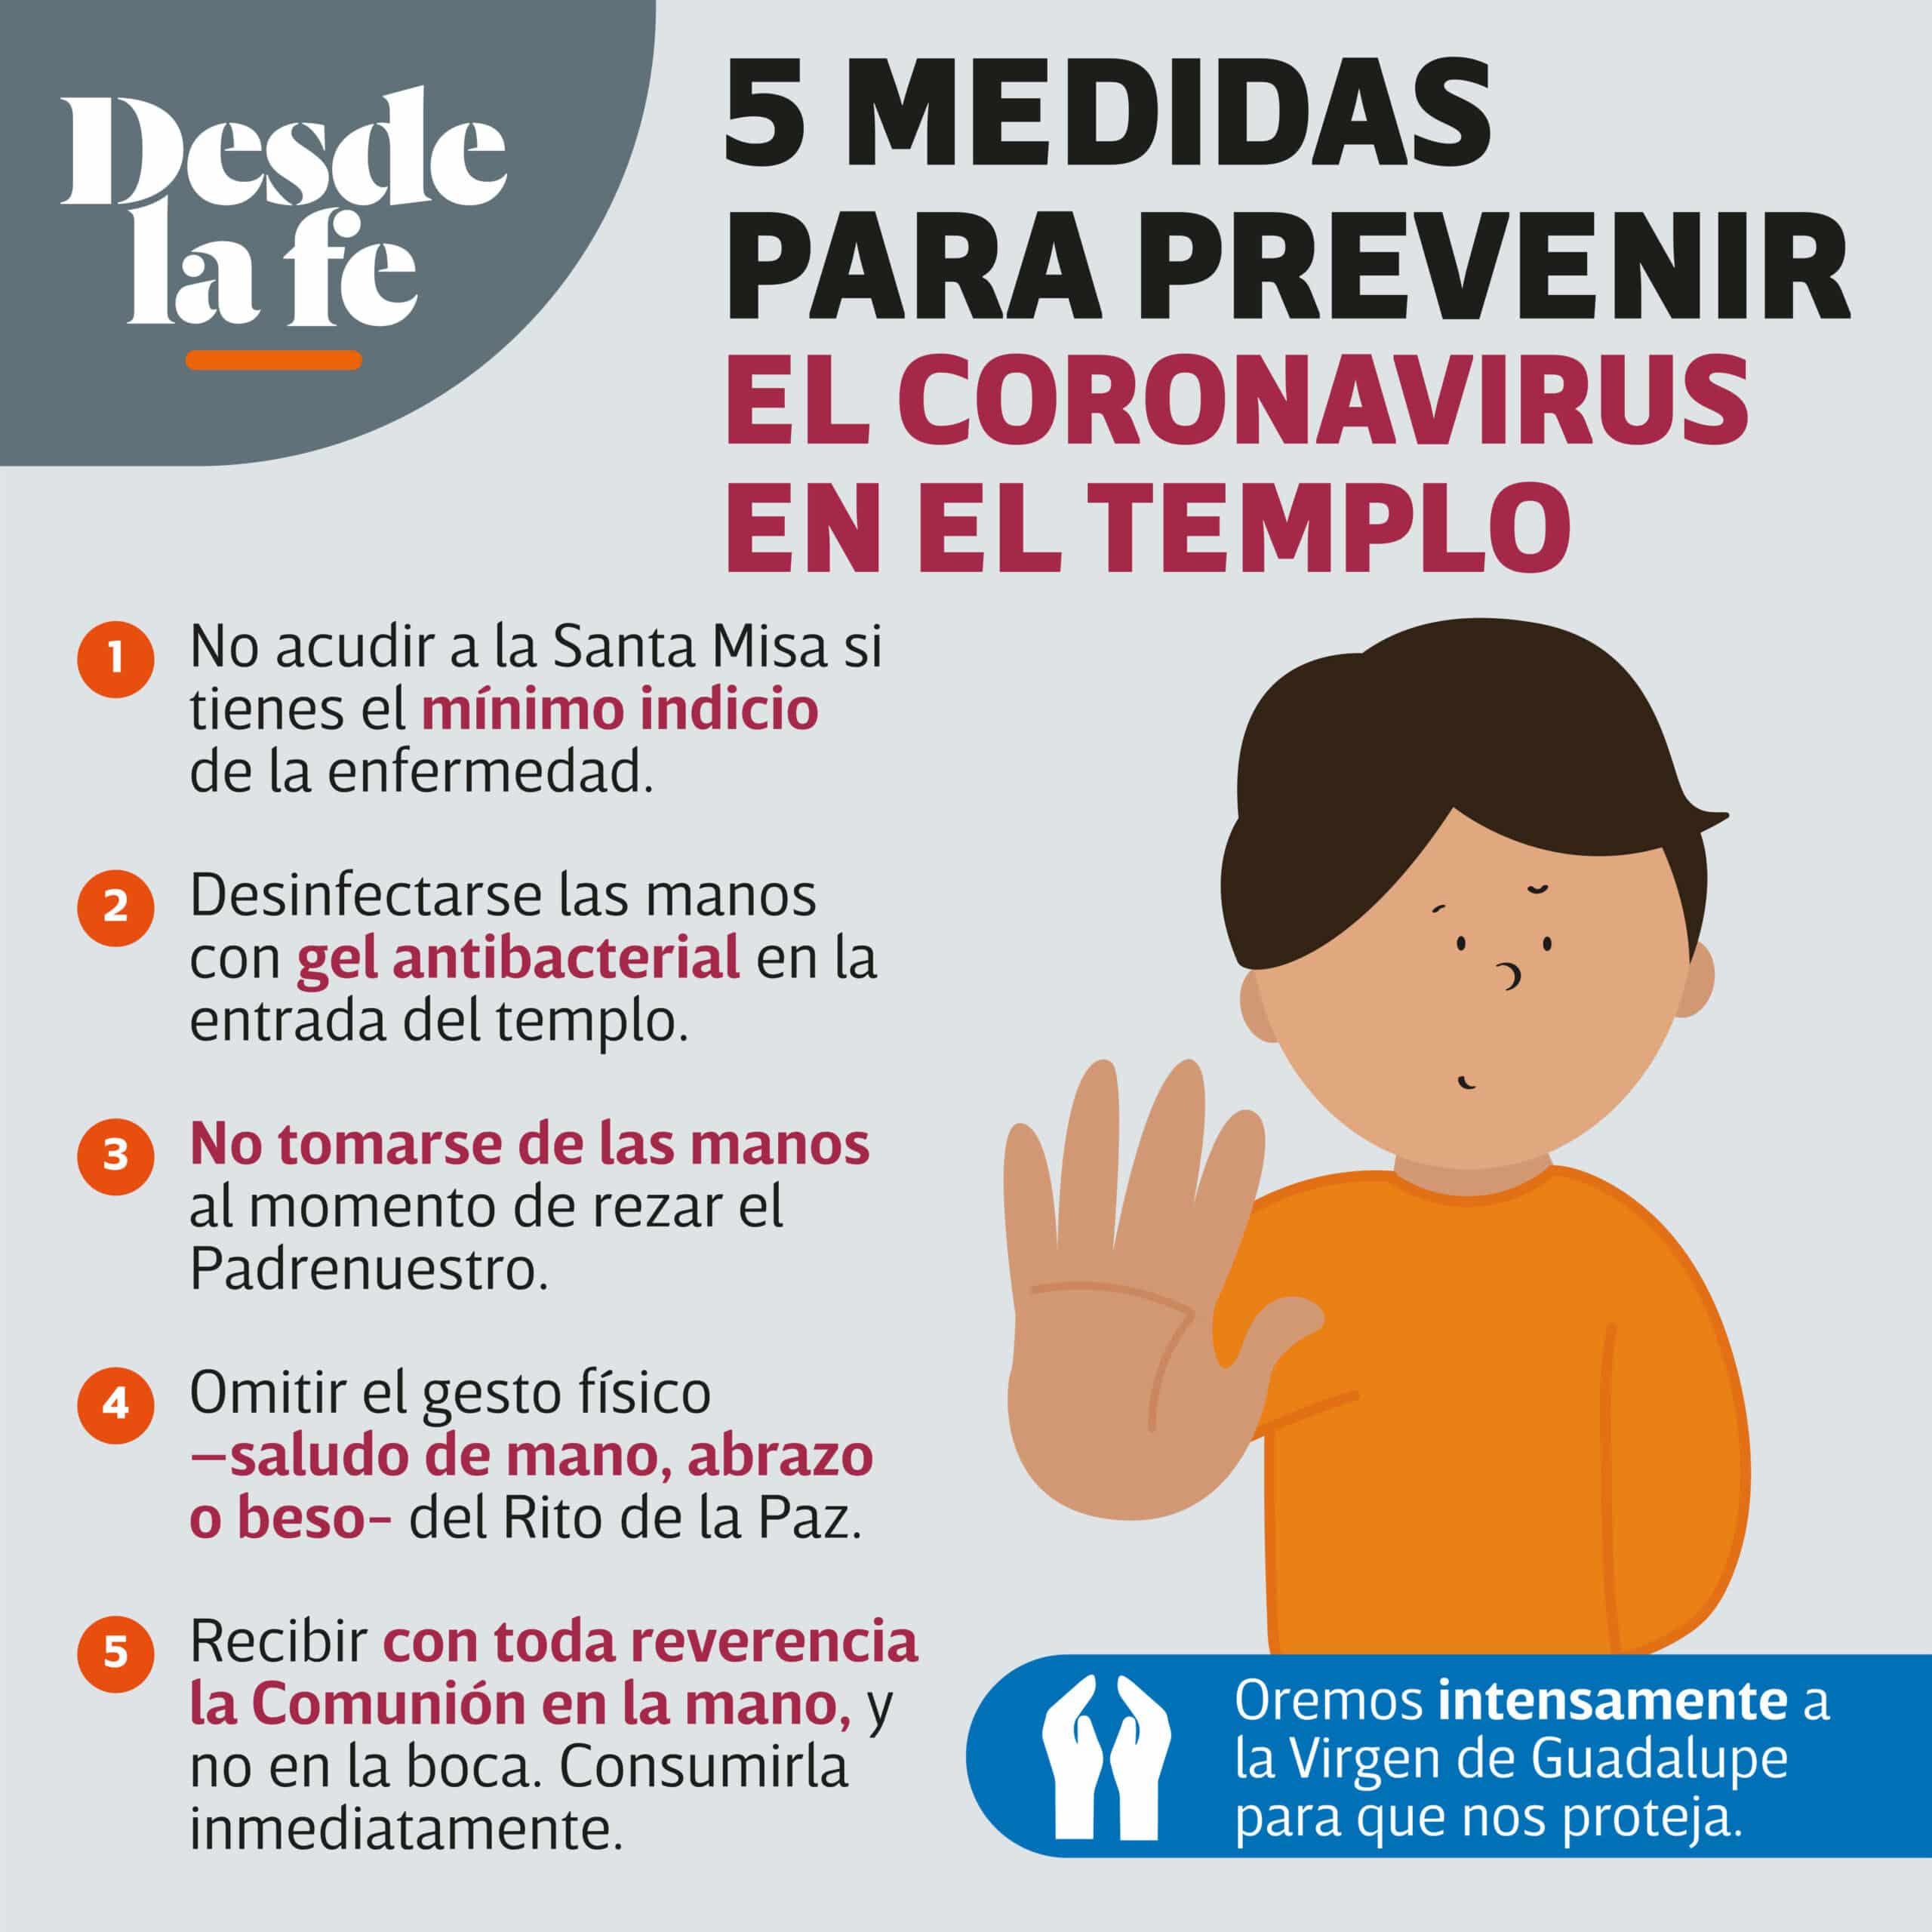 Algunas medidas para prevenir el contagio por coronavirus al asistir a Misa.